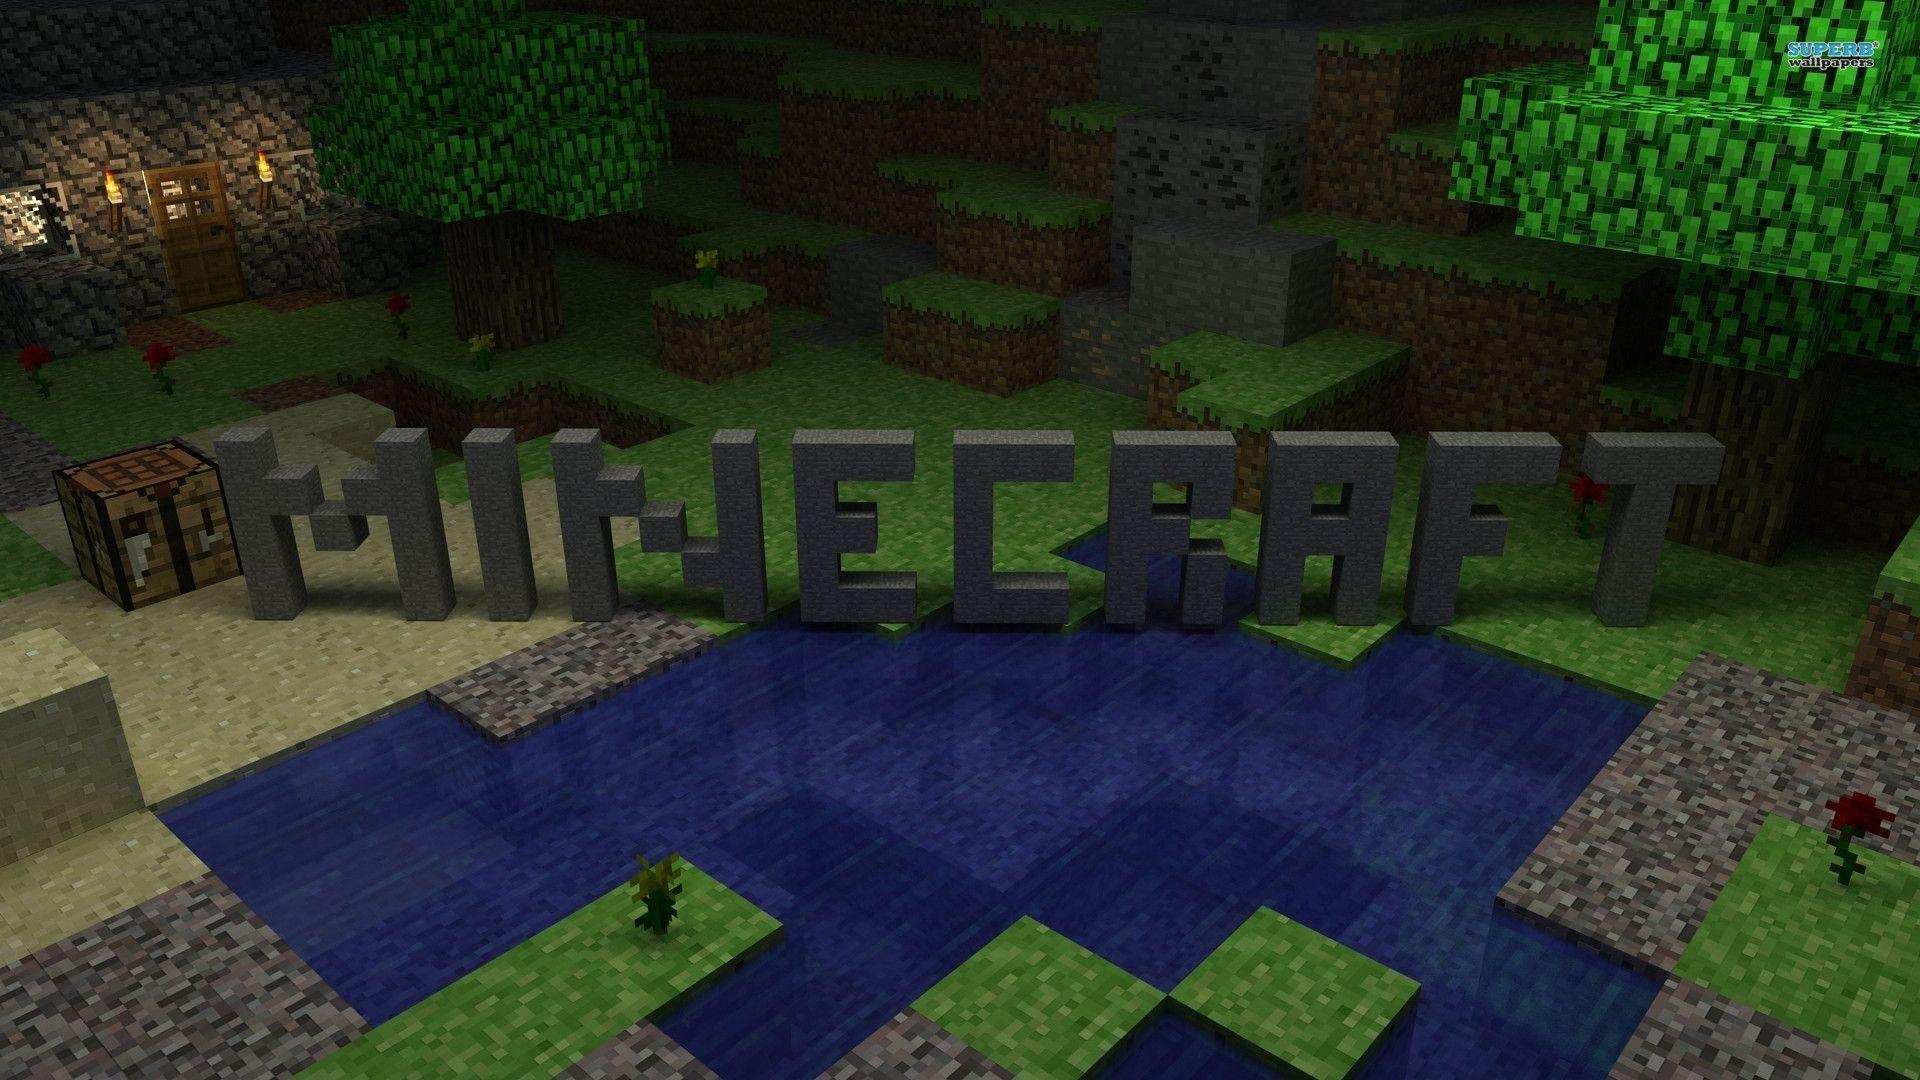 Fondos de Minecraft 1920x1080 - Fondo de pantalla de la cueva